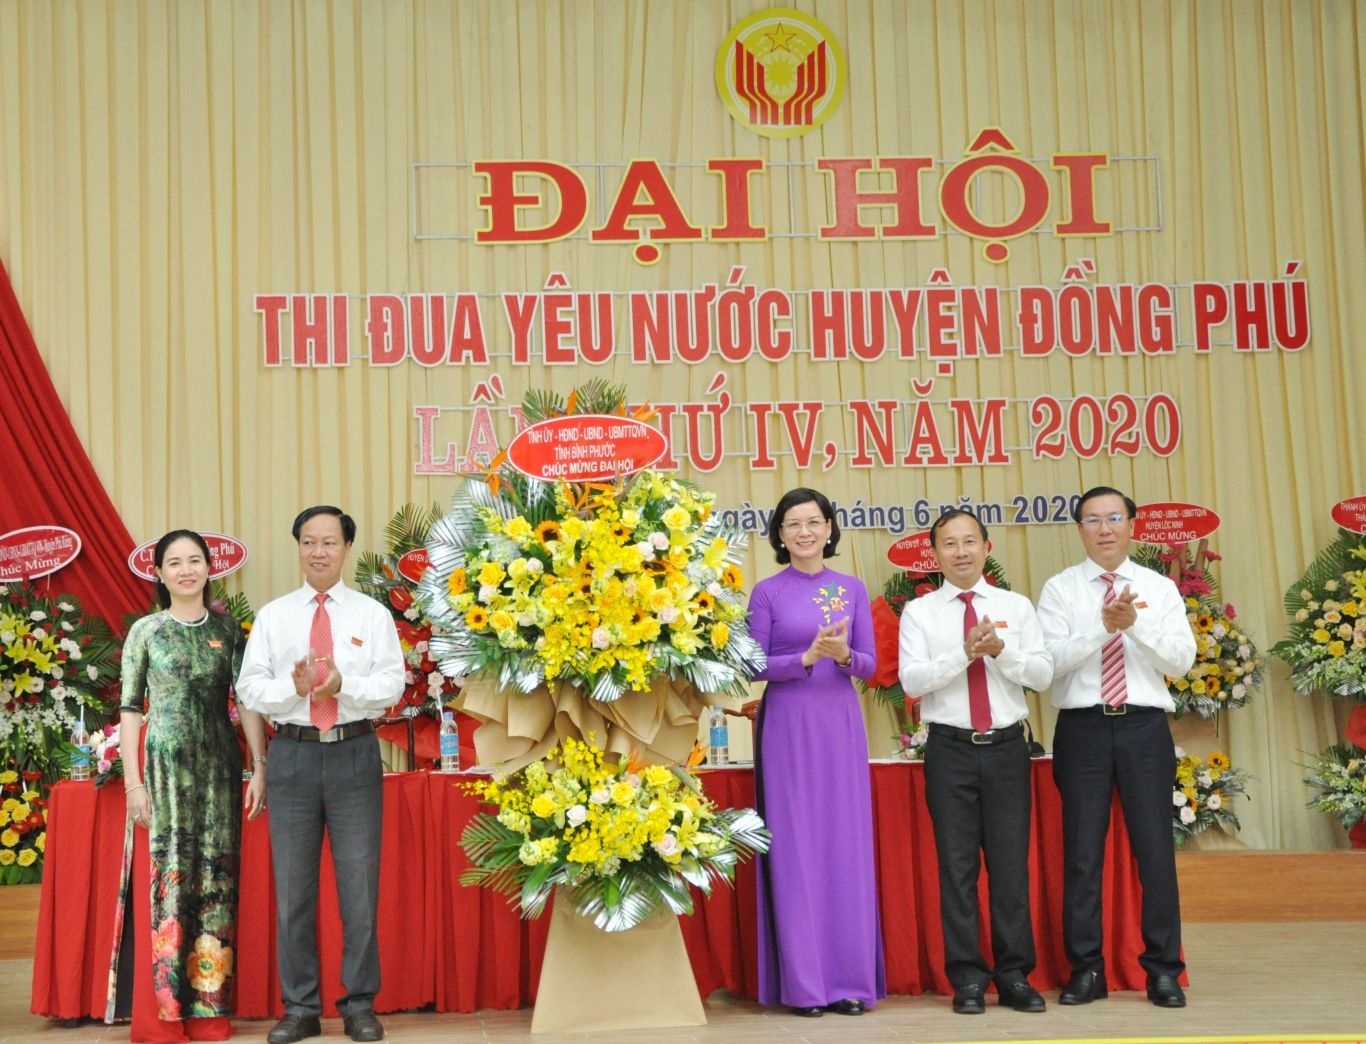 Đồng Phú tổ chức Đại hội thi đua yêu nước lần thứ IV năm 2020